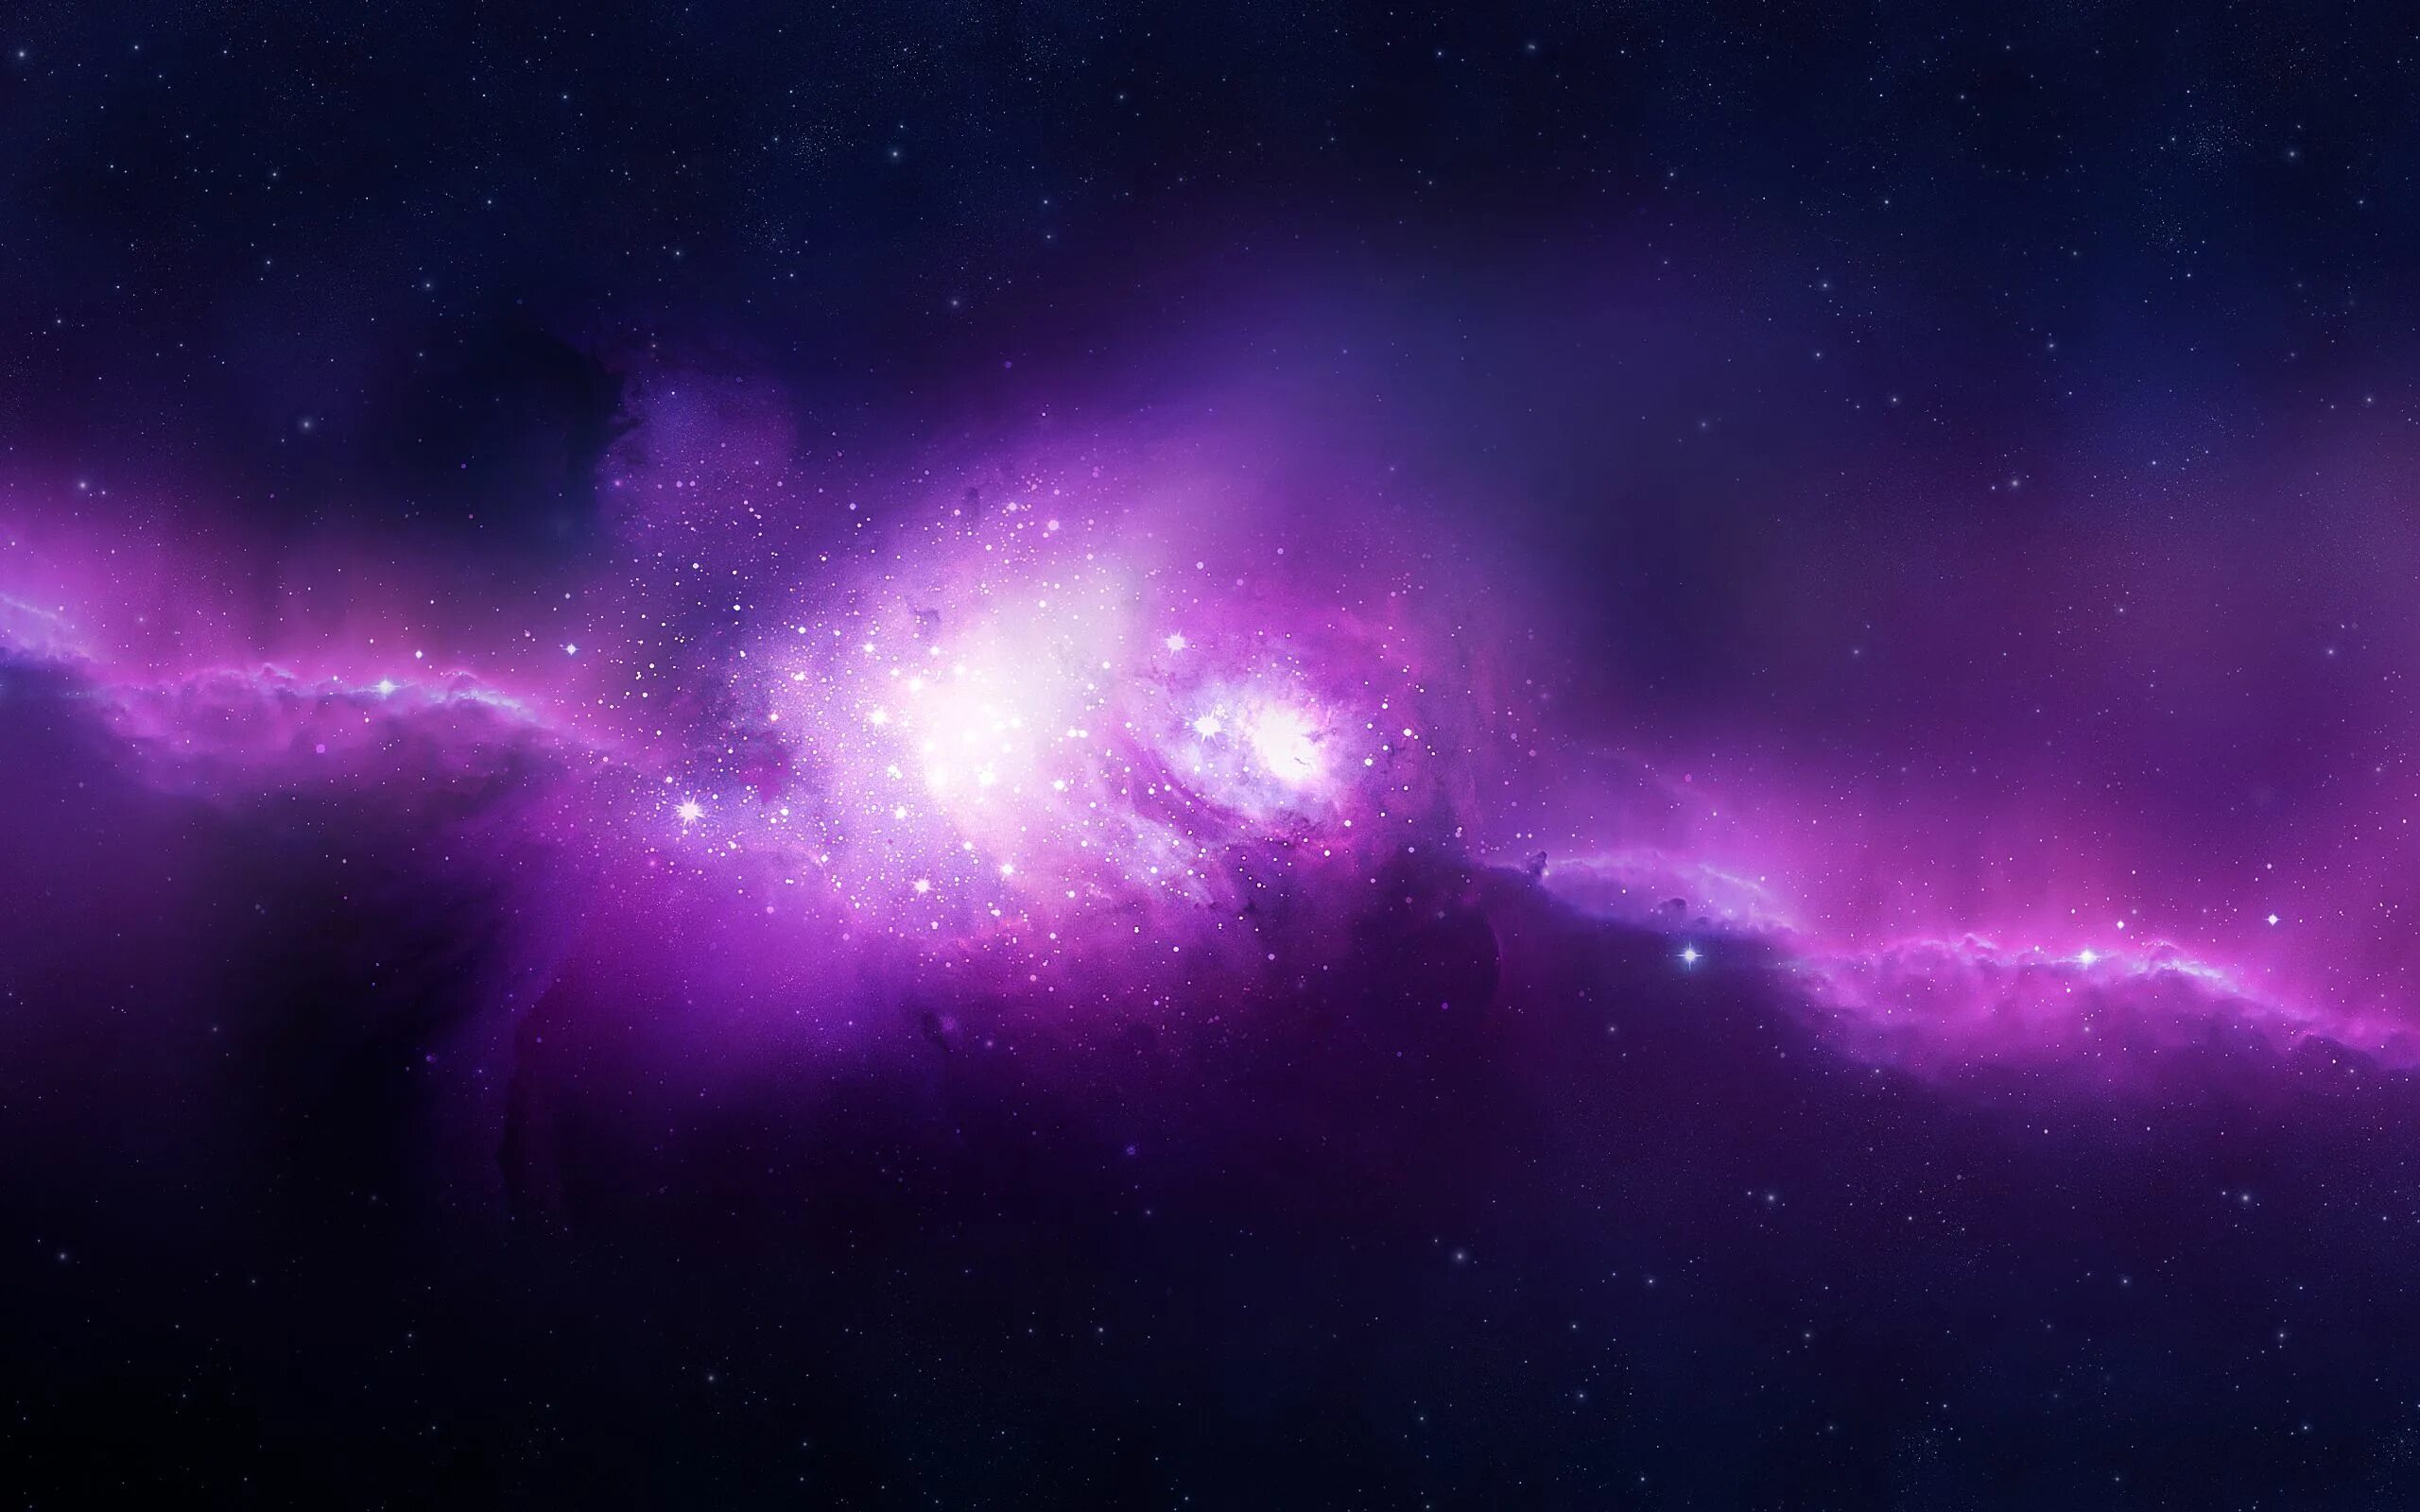 1024 x 576 для ютуба. Галактика Небула. Космос фон. Красивый космический фон. Фиолетовый космос.